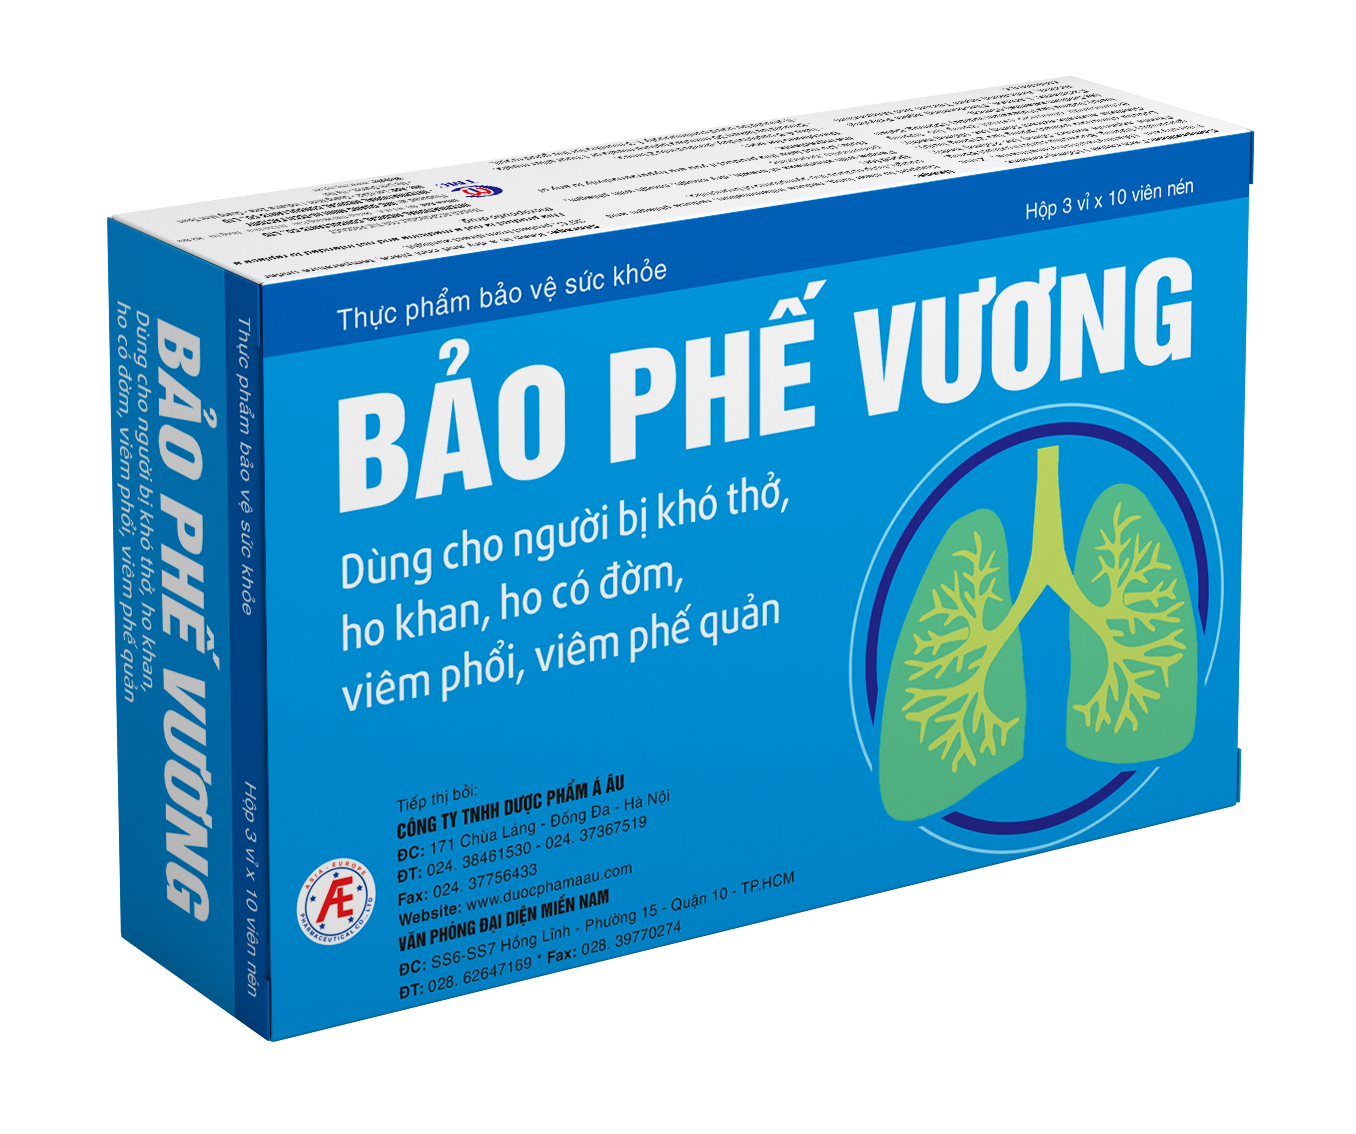 VH - Bao Phe Vuong